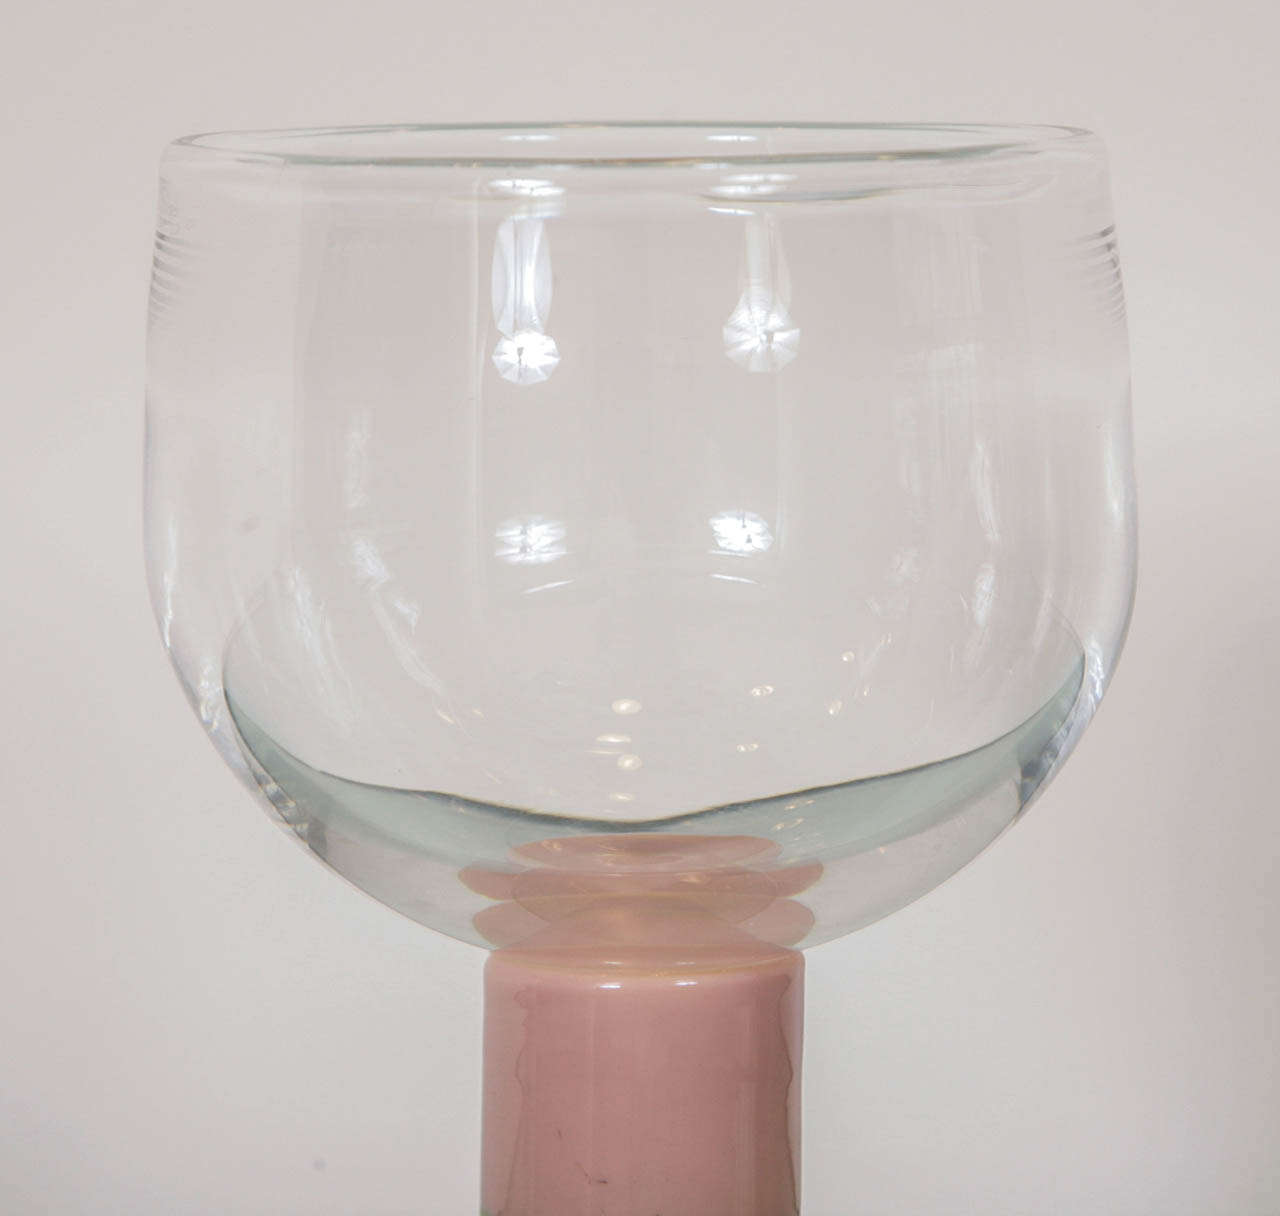 gunnar cyren pop glass